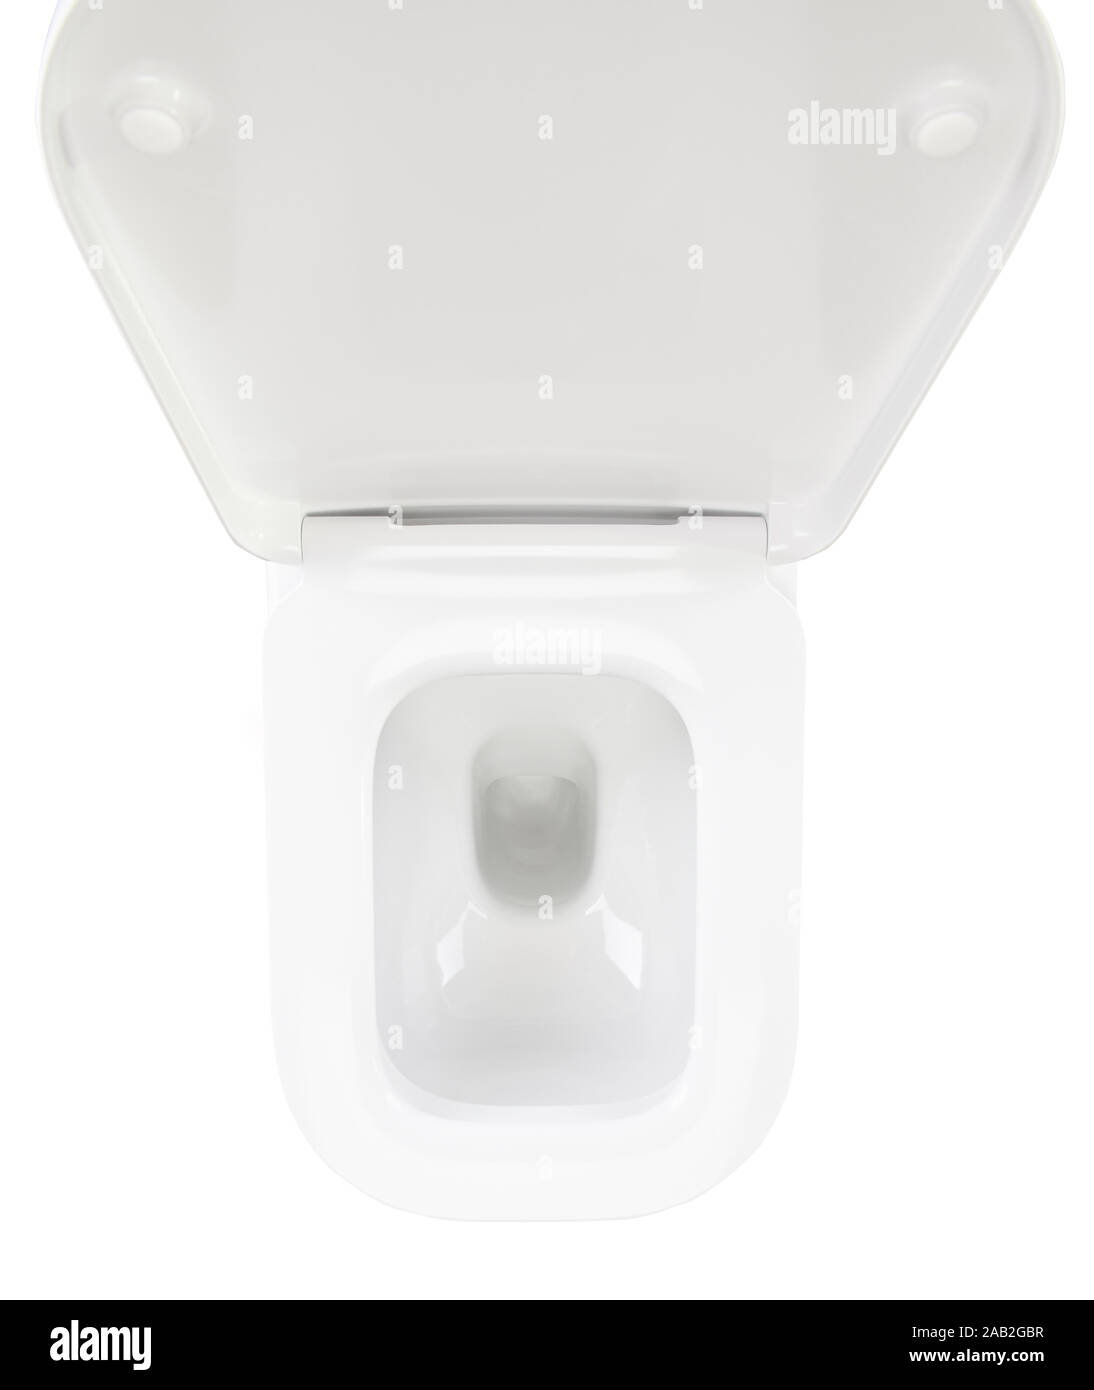 Plastique blanc propre toilettes modernes haut abvoe voir isolé sur fond blanc Banque D'Images